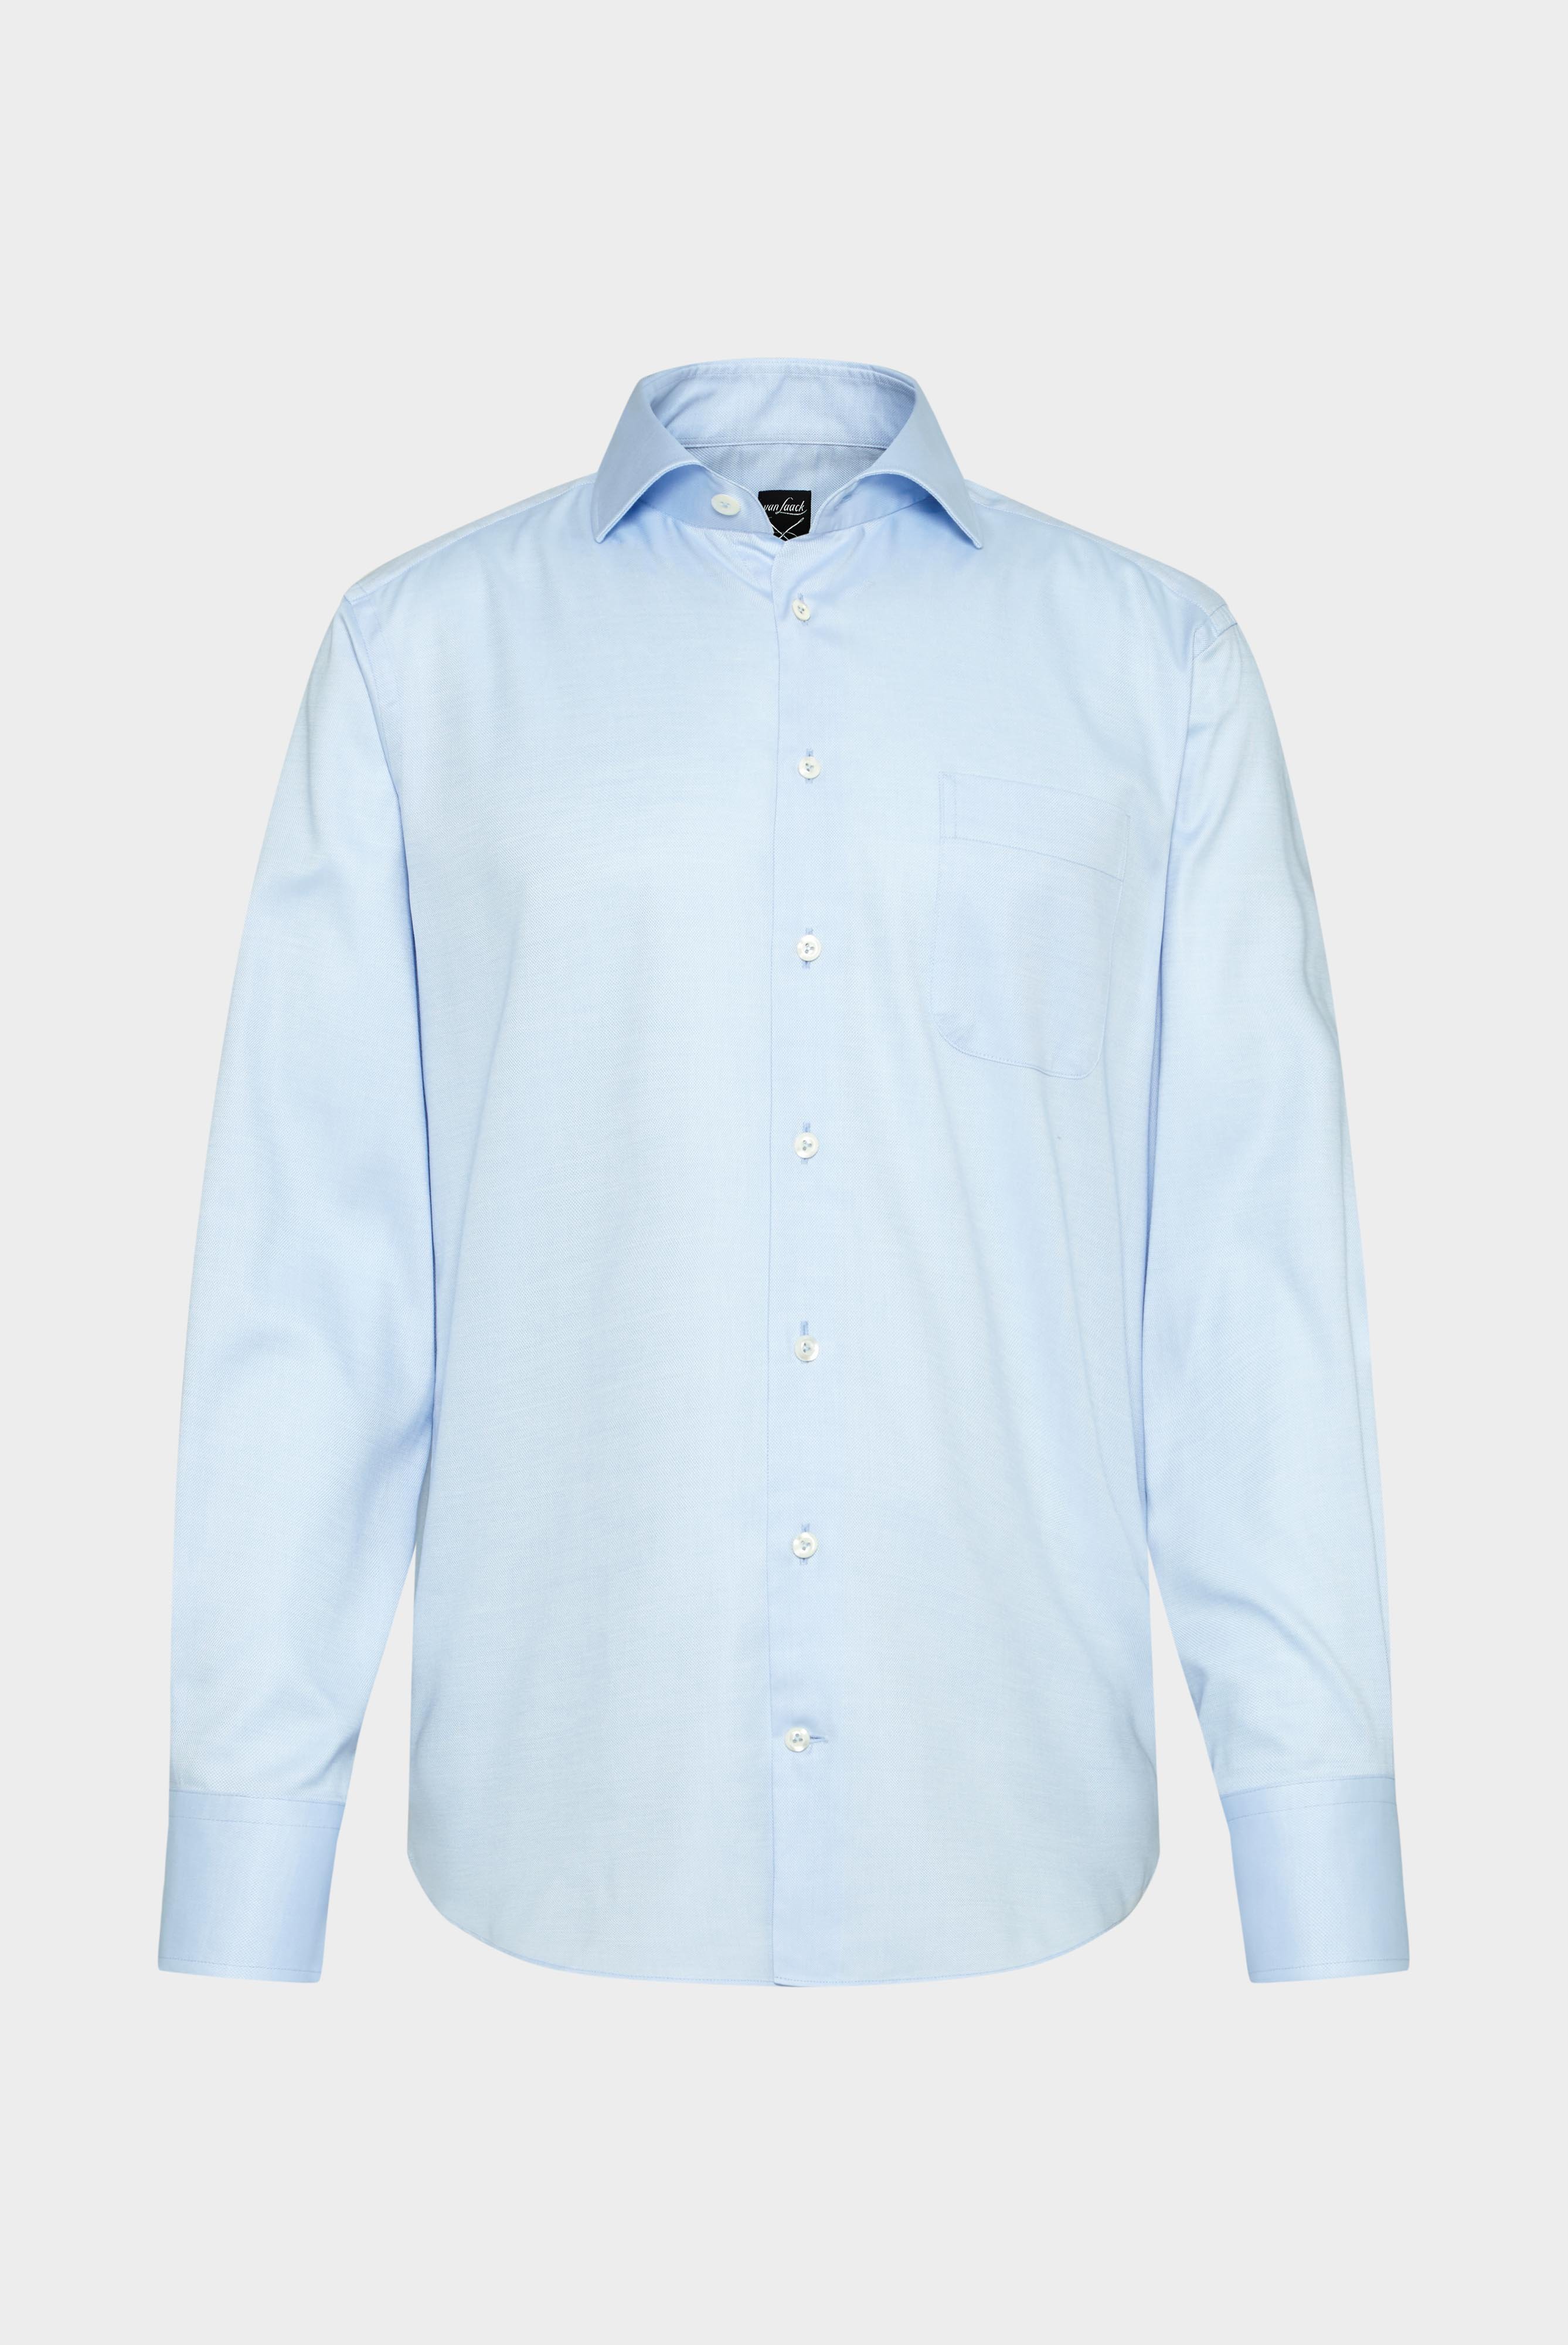 Business Shirts+Structured Plain Shirt, Natté/Basket Weave+20.2021.AV.130872.720.37